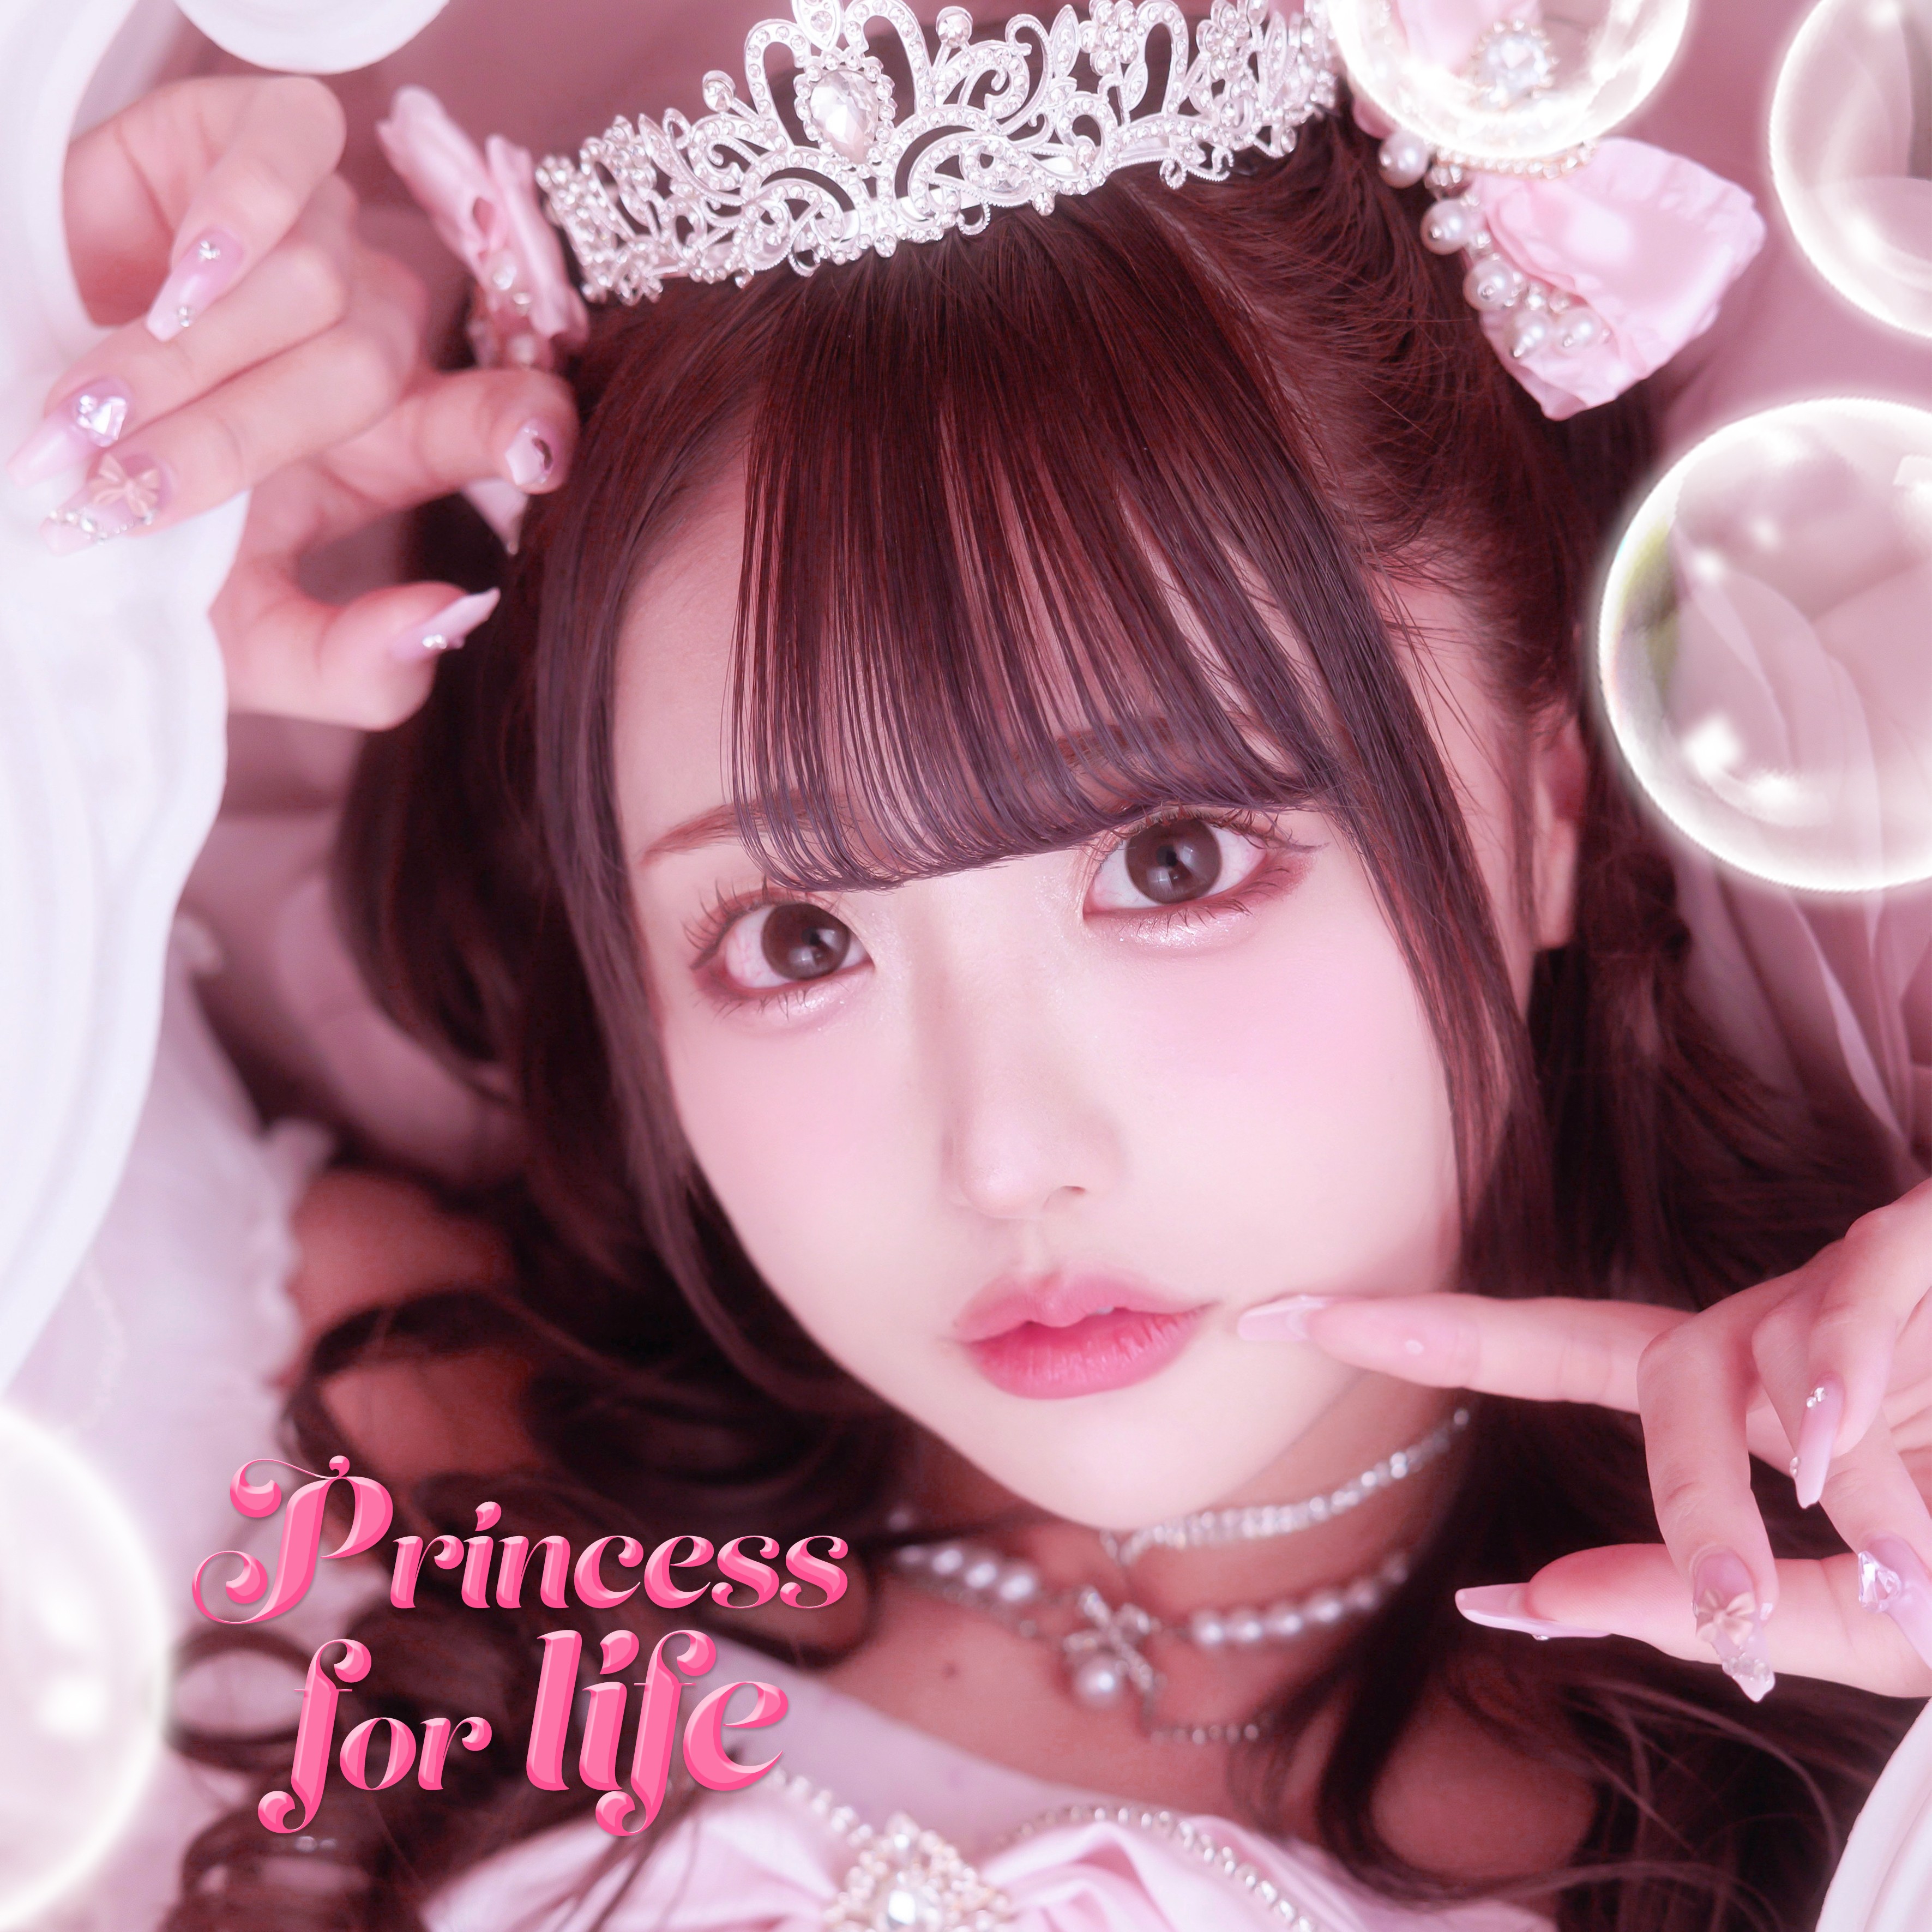 Princess for life